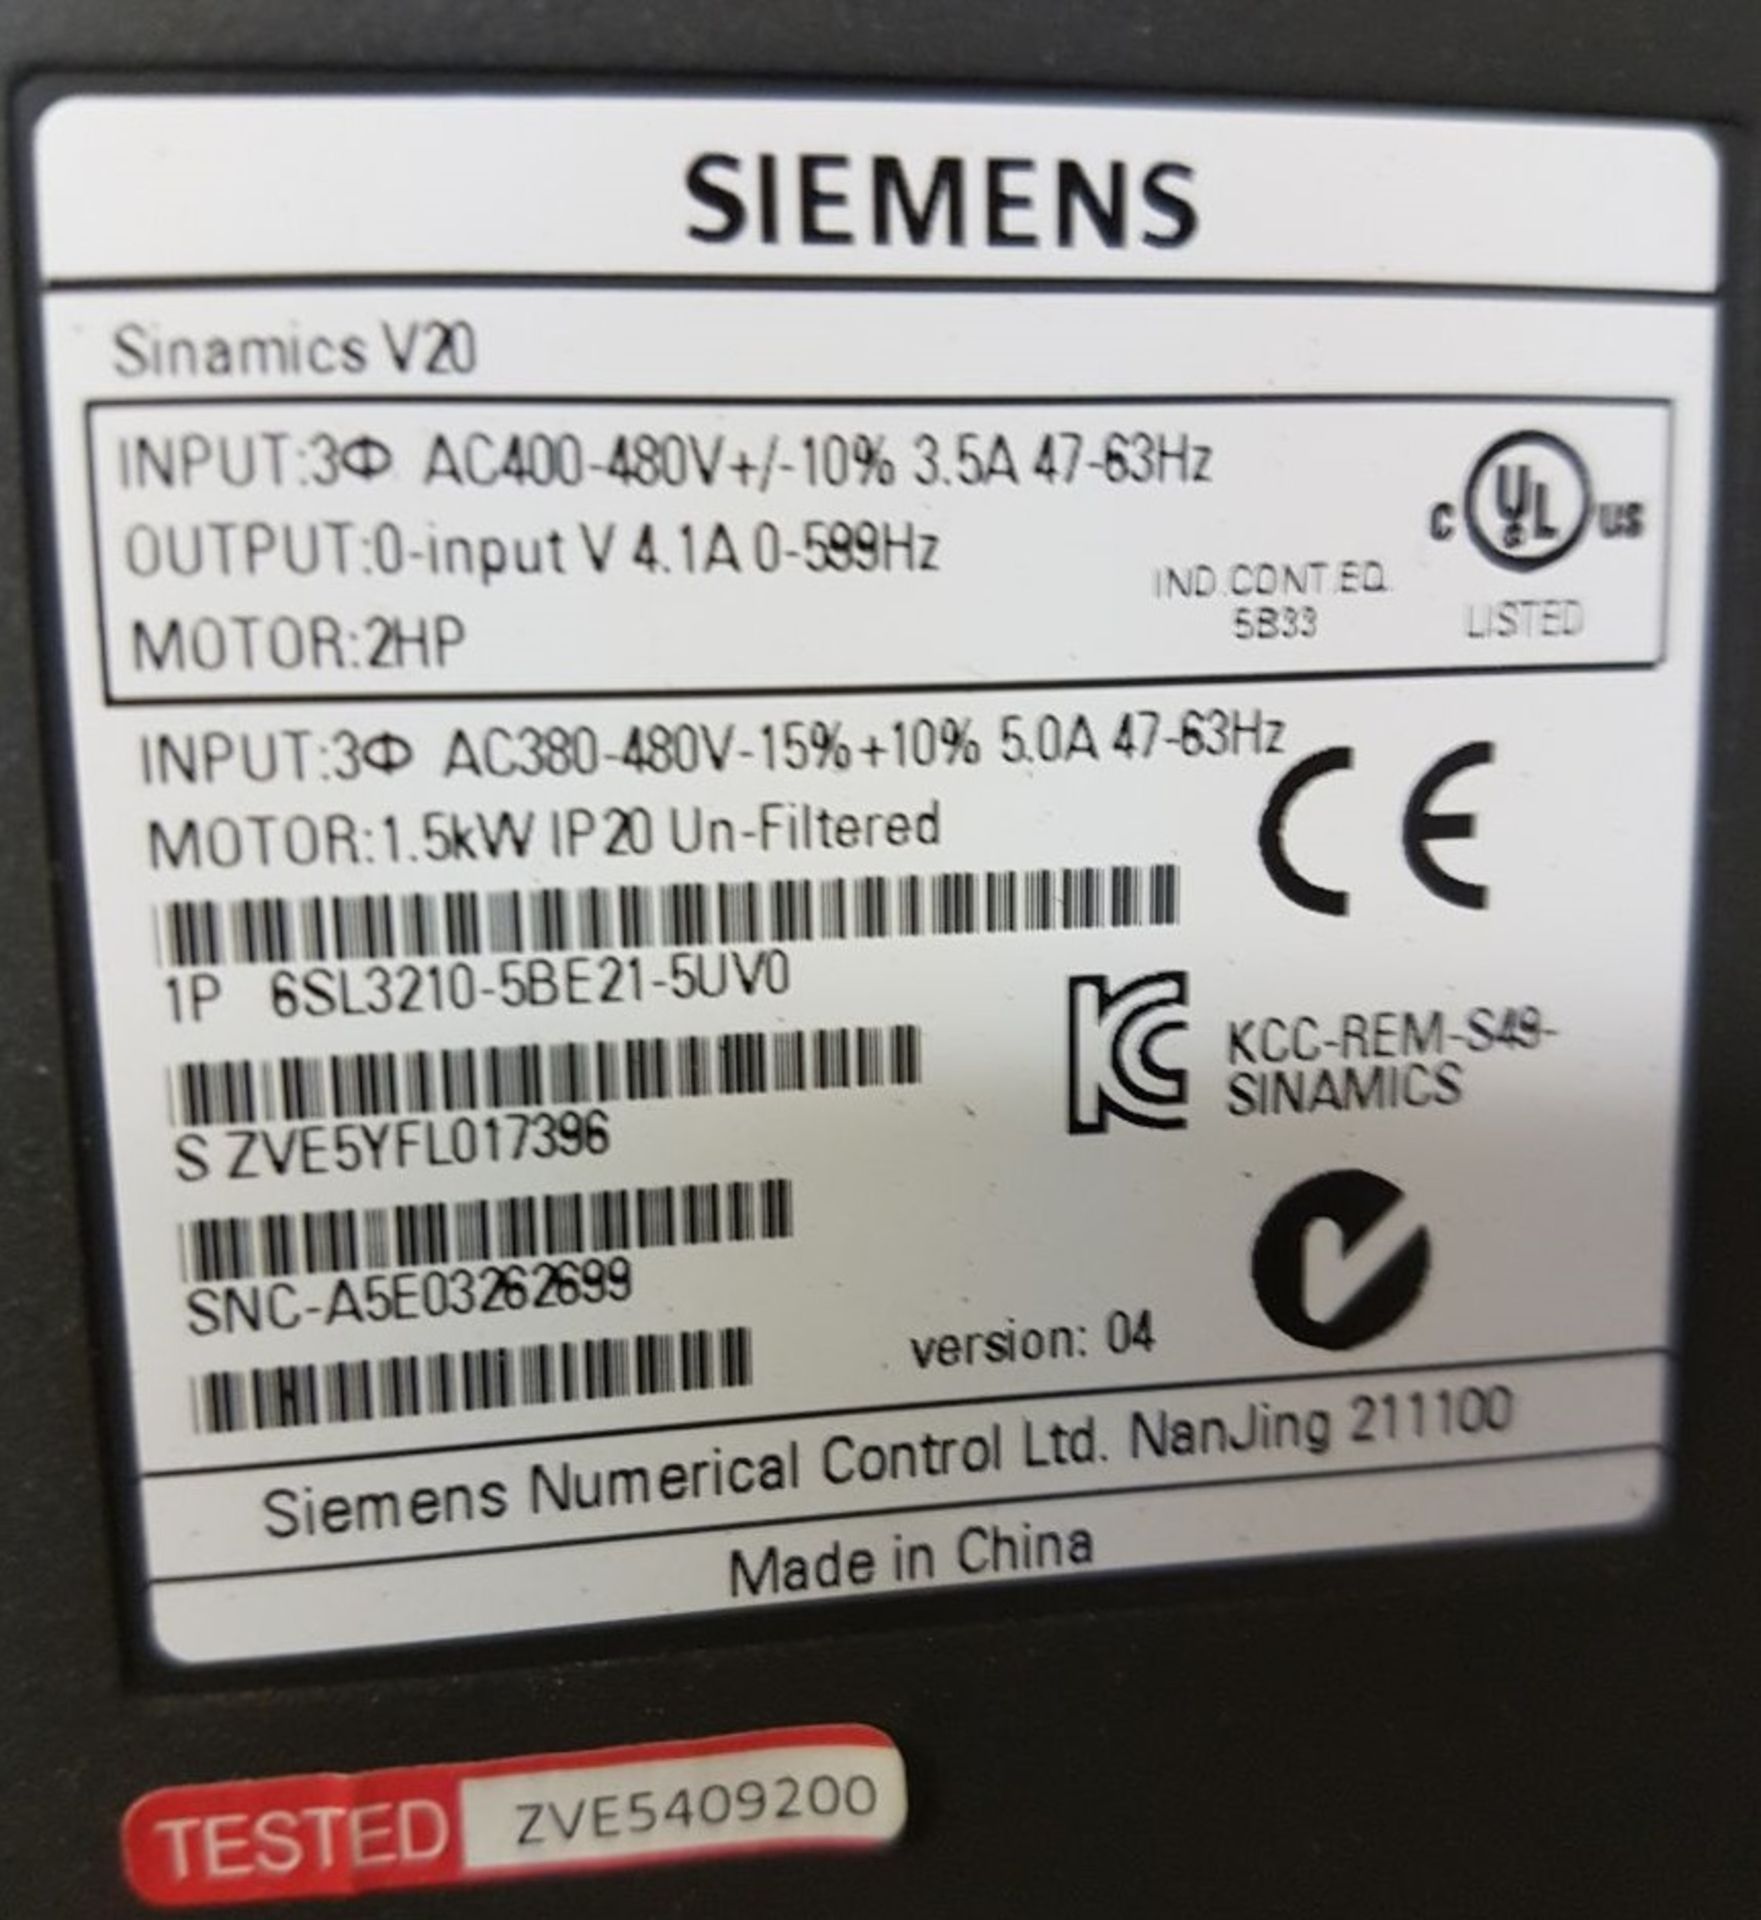 Siemens Sinamics V20 Inverter - Image 3 of 3